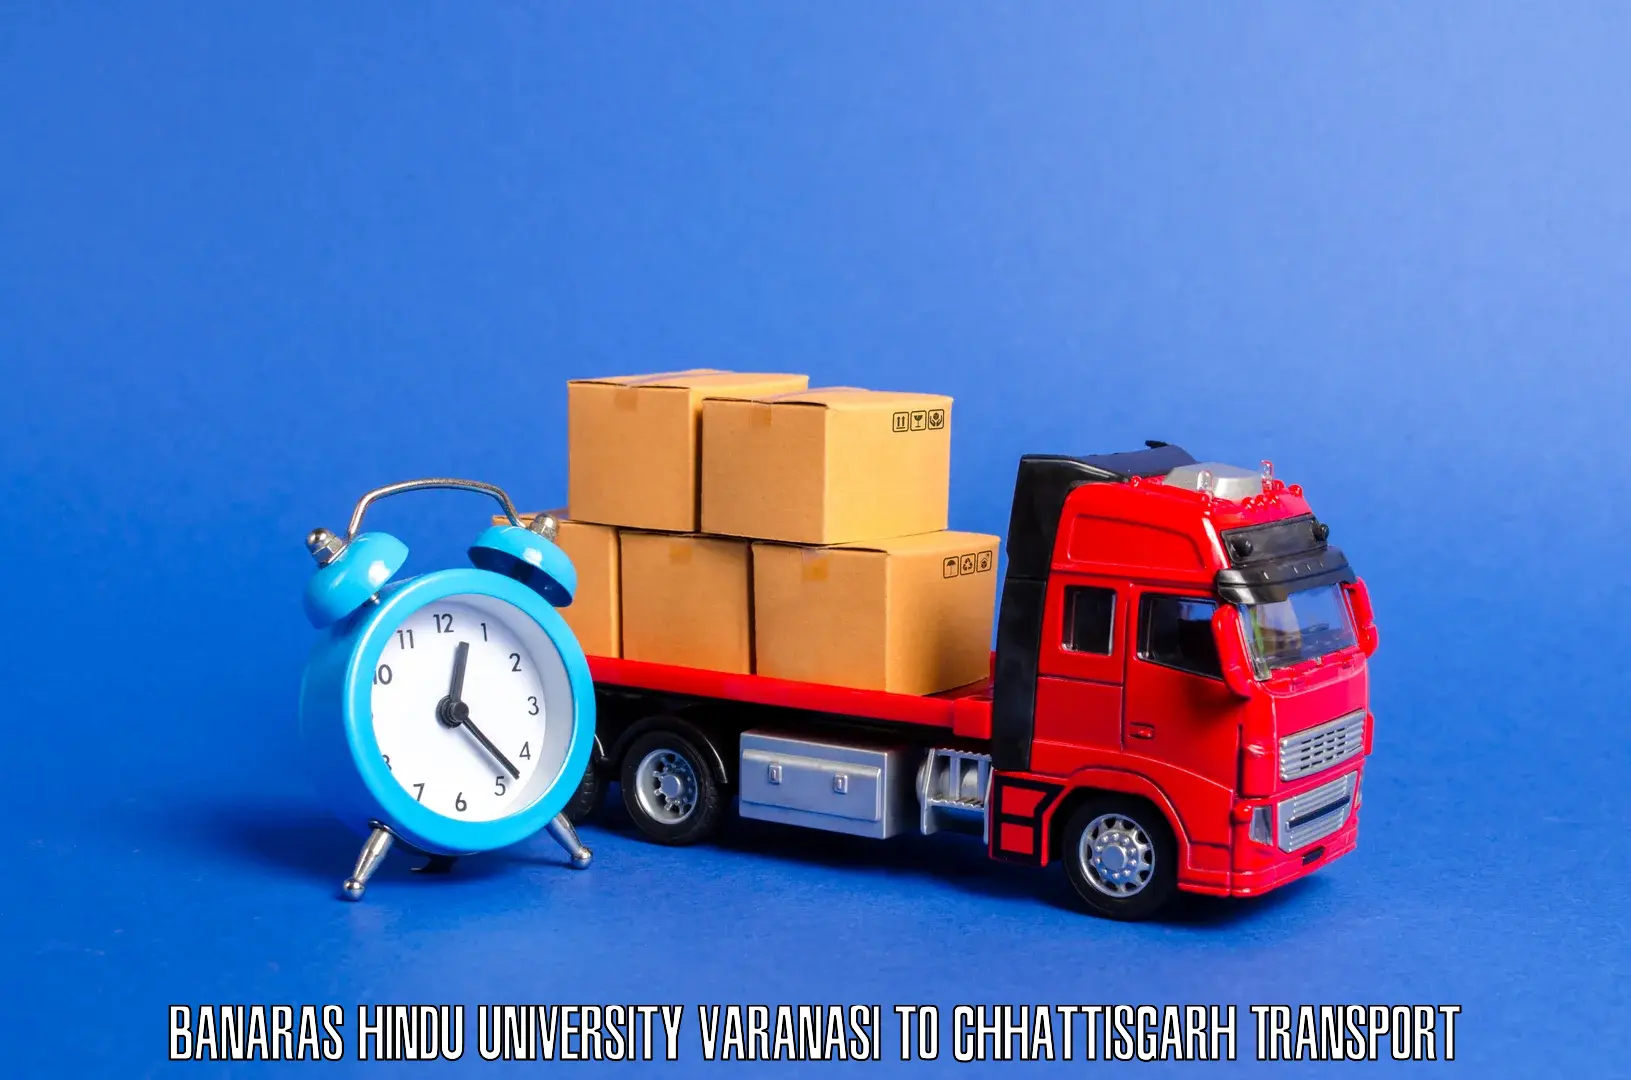 Daily parcel service transport Banaras Hindu University Varanasi to Ramanujganj